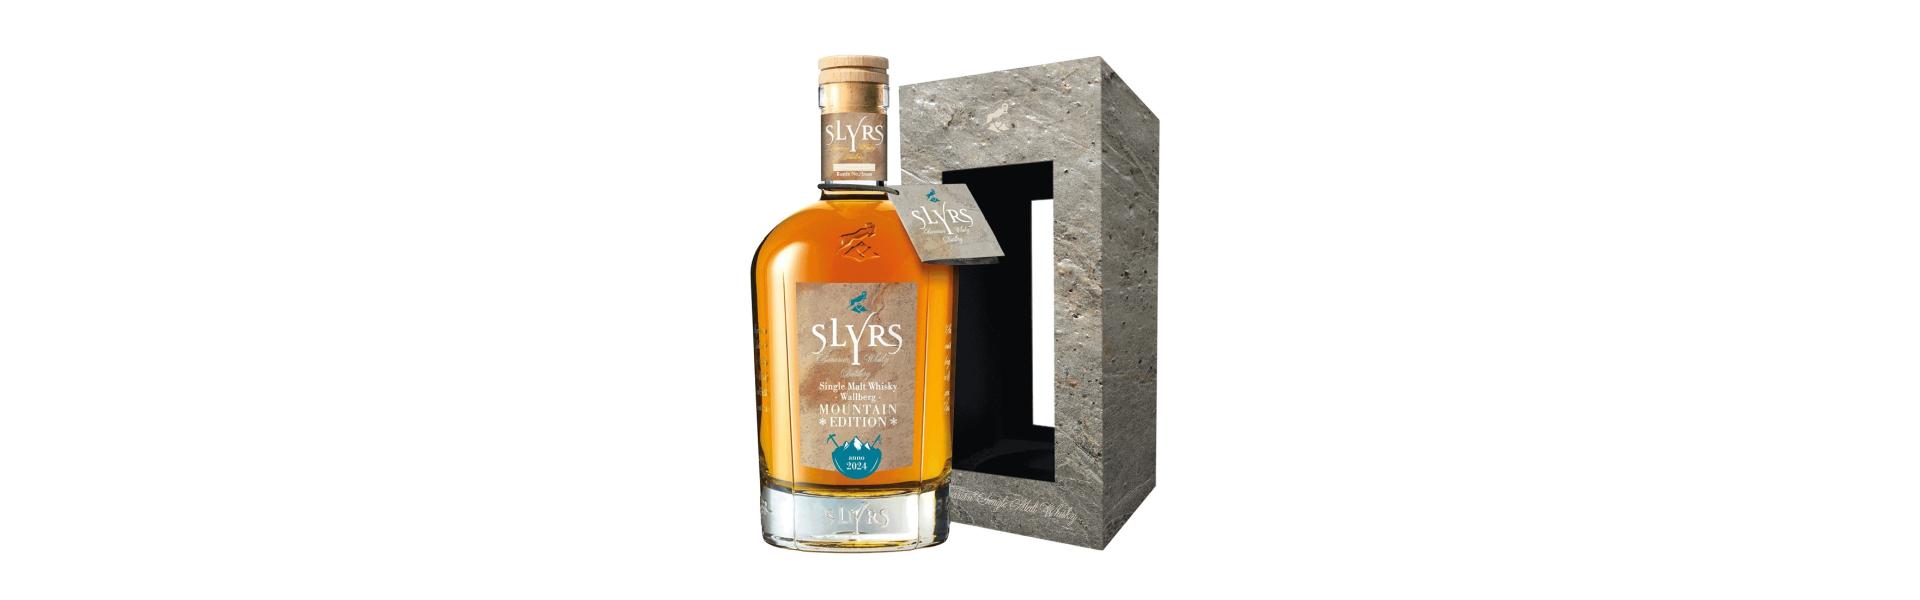 Neu vom Schliersee: SLYRS Mountain-Edition Wallberg - WhiskyExperts